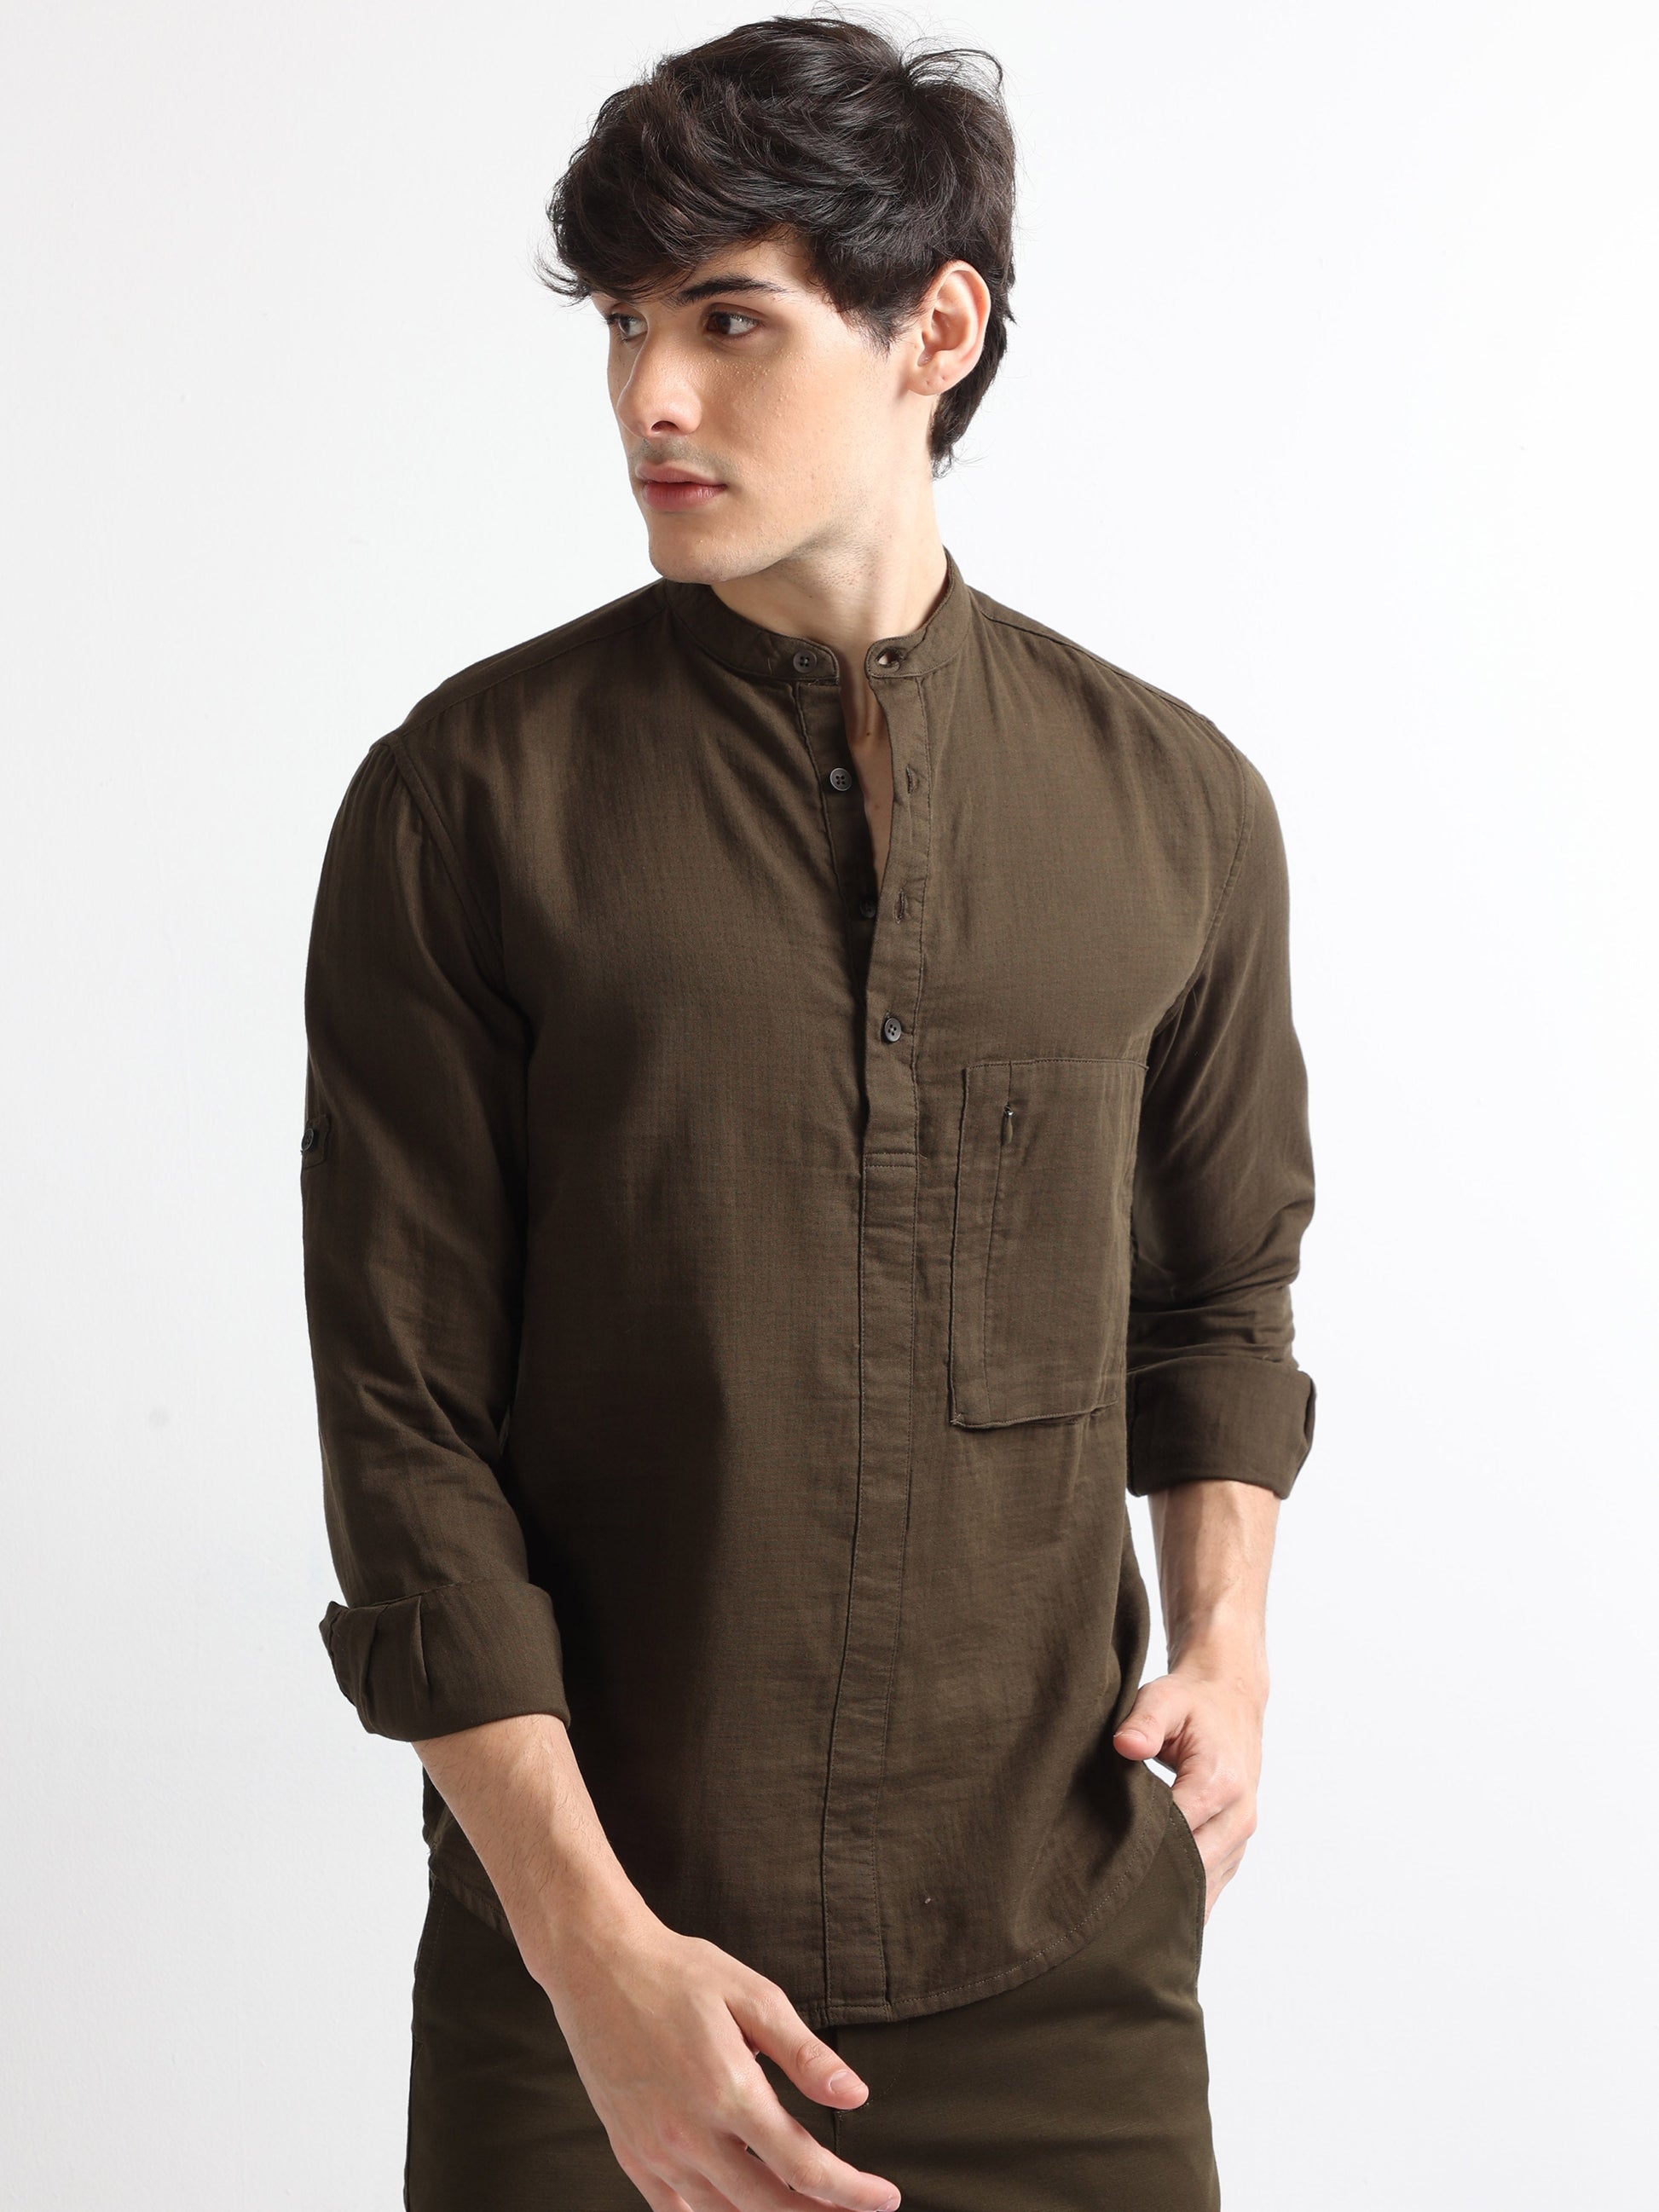 Buy Chinese Collar Brushed Stylish Shirt Online.